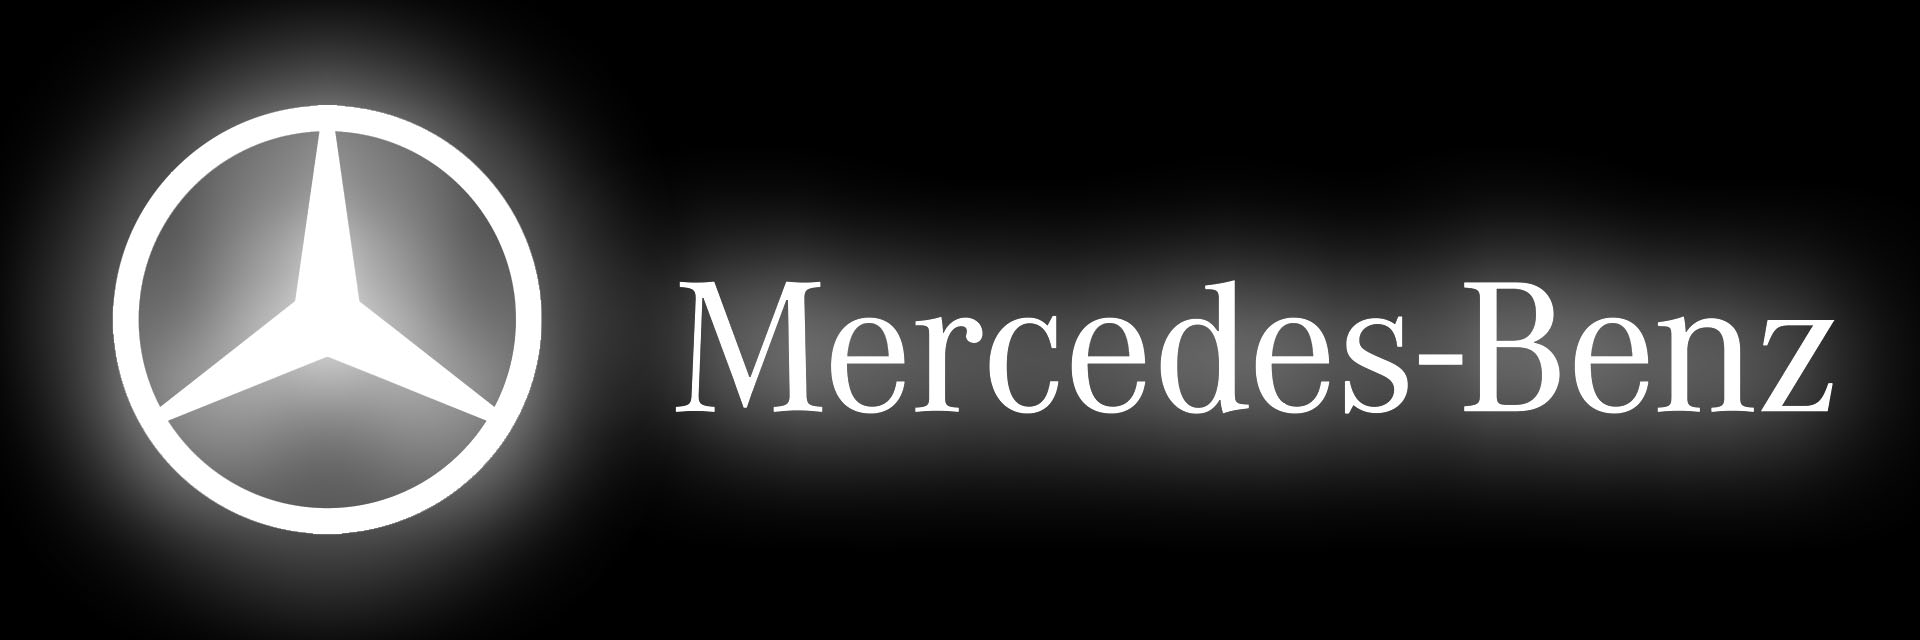 Mercedes-Benz signe un accord avec son réseau européen pour le